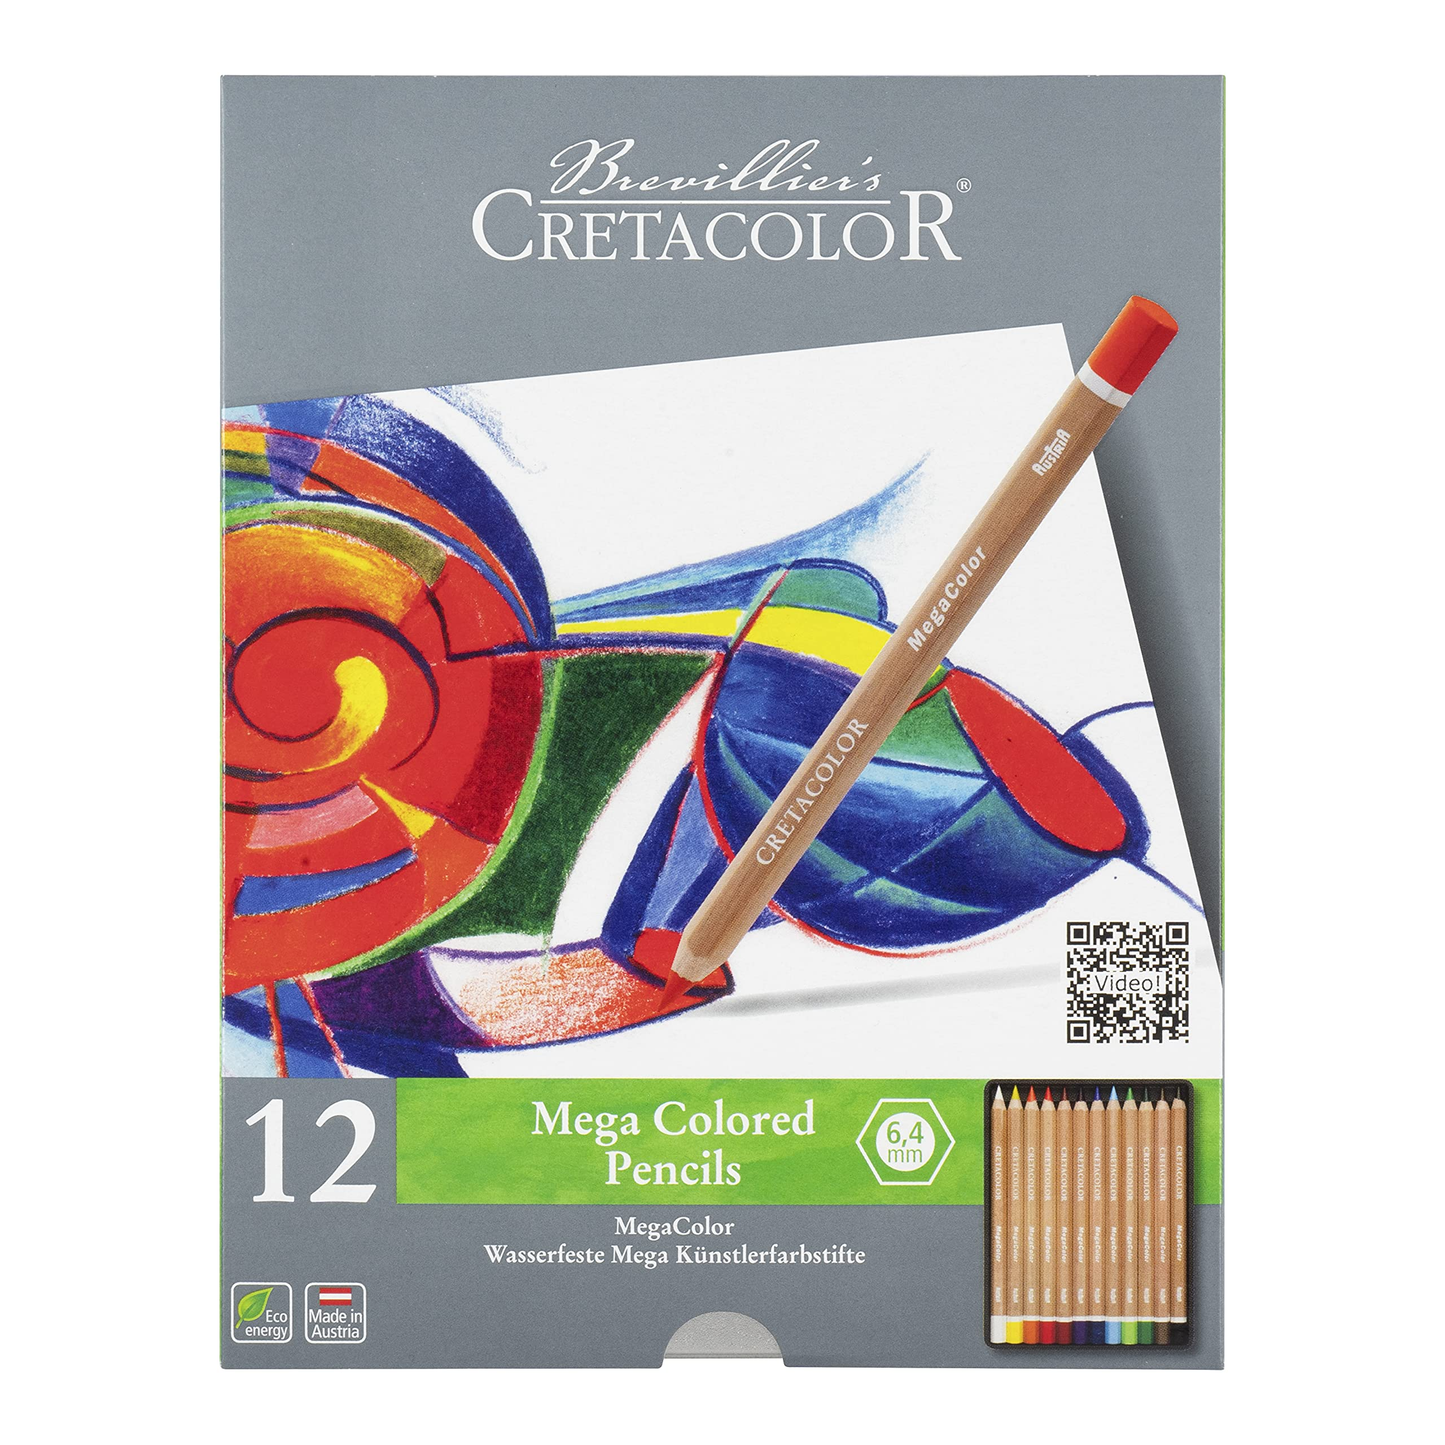 Cretacolor Mega Color Pencils For Professionals